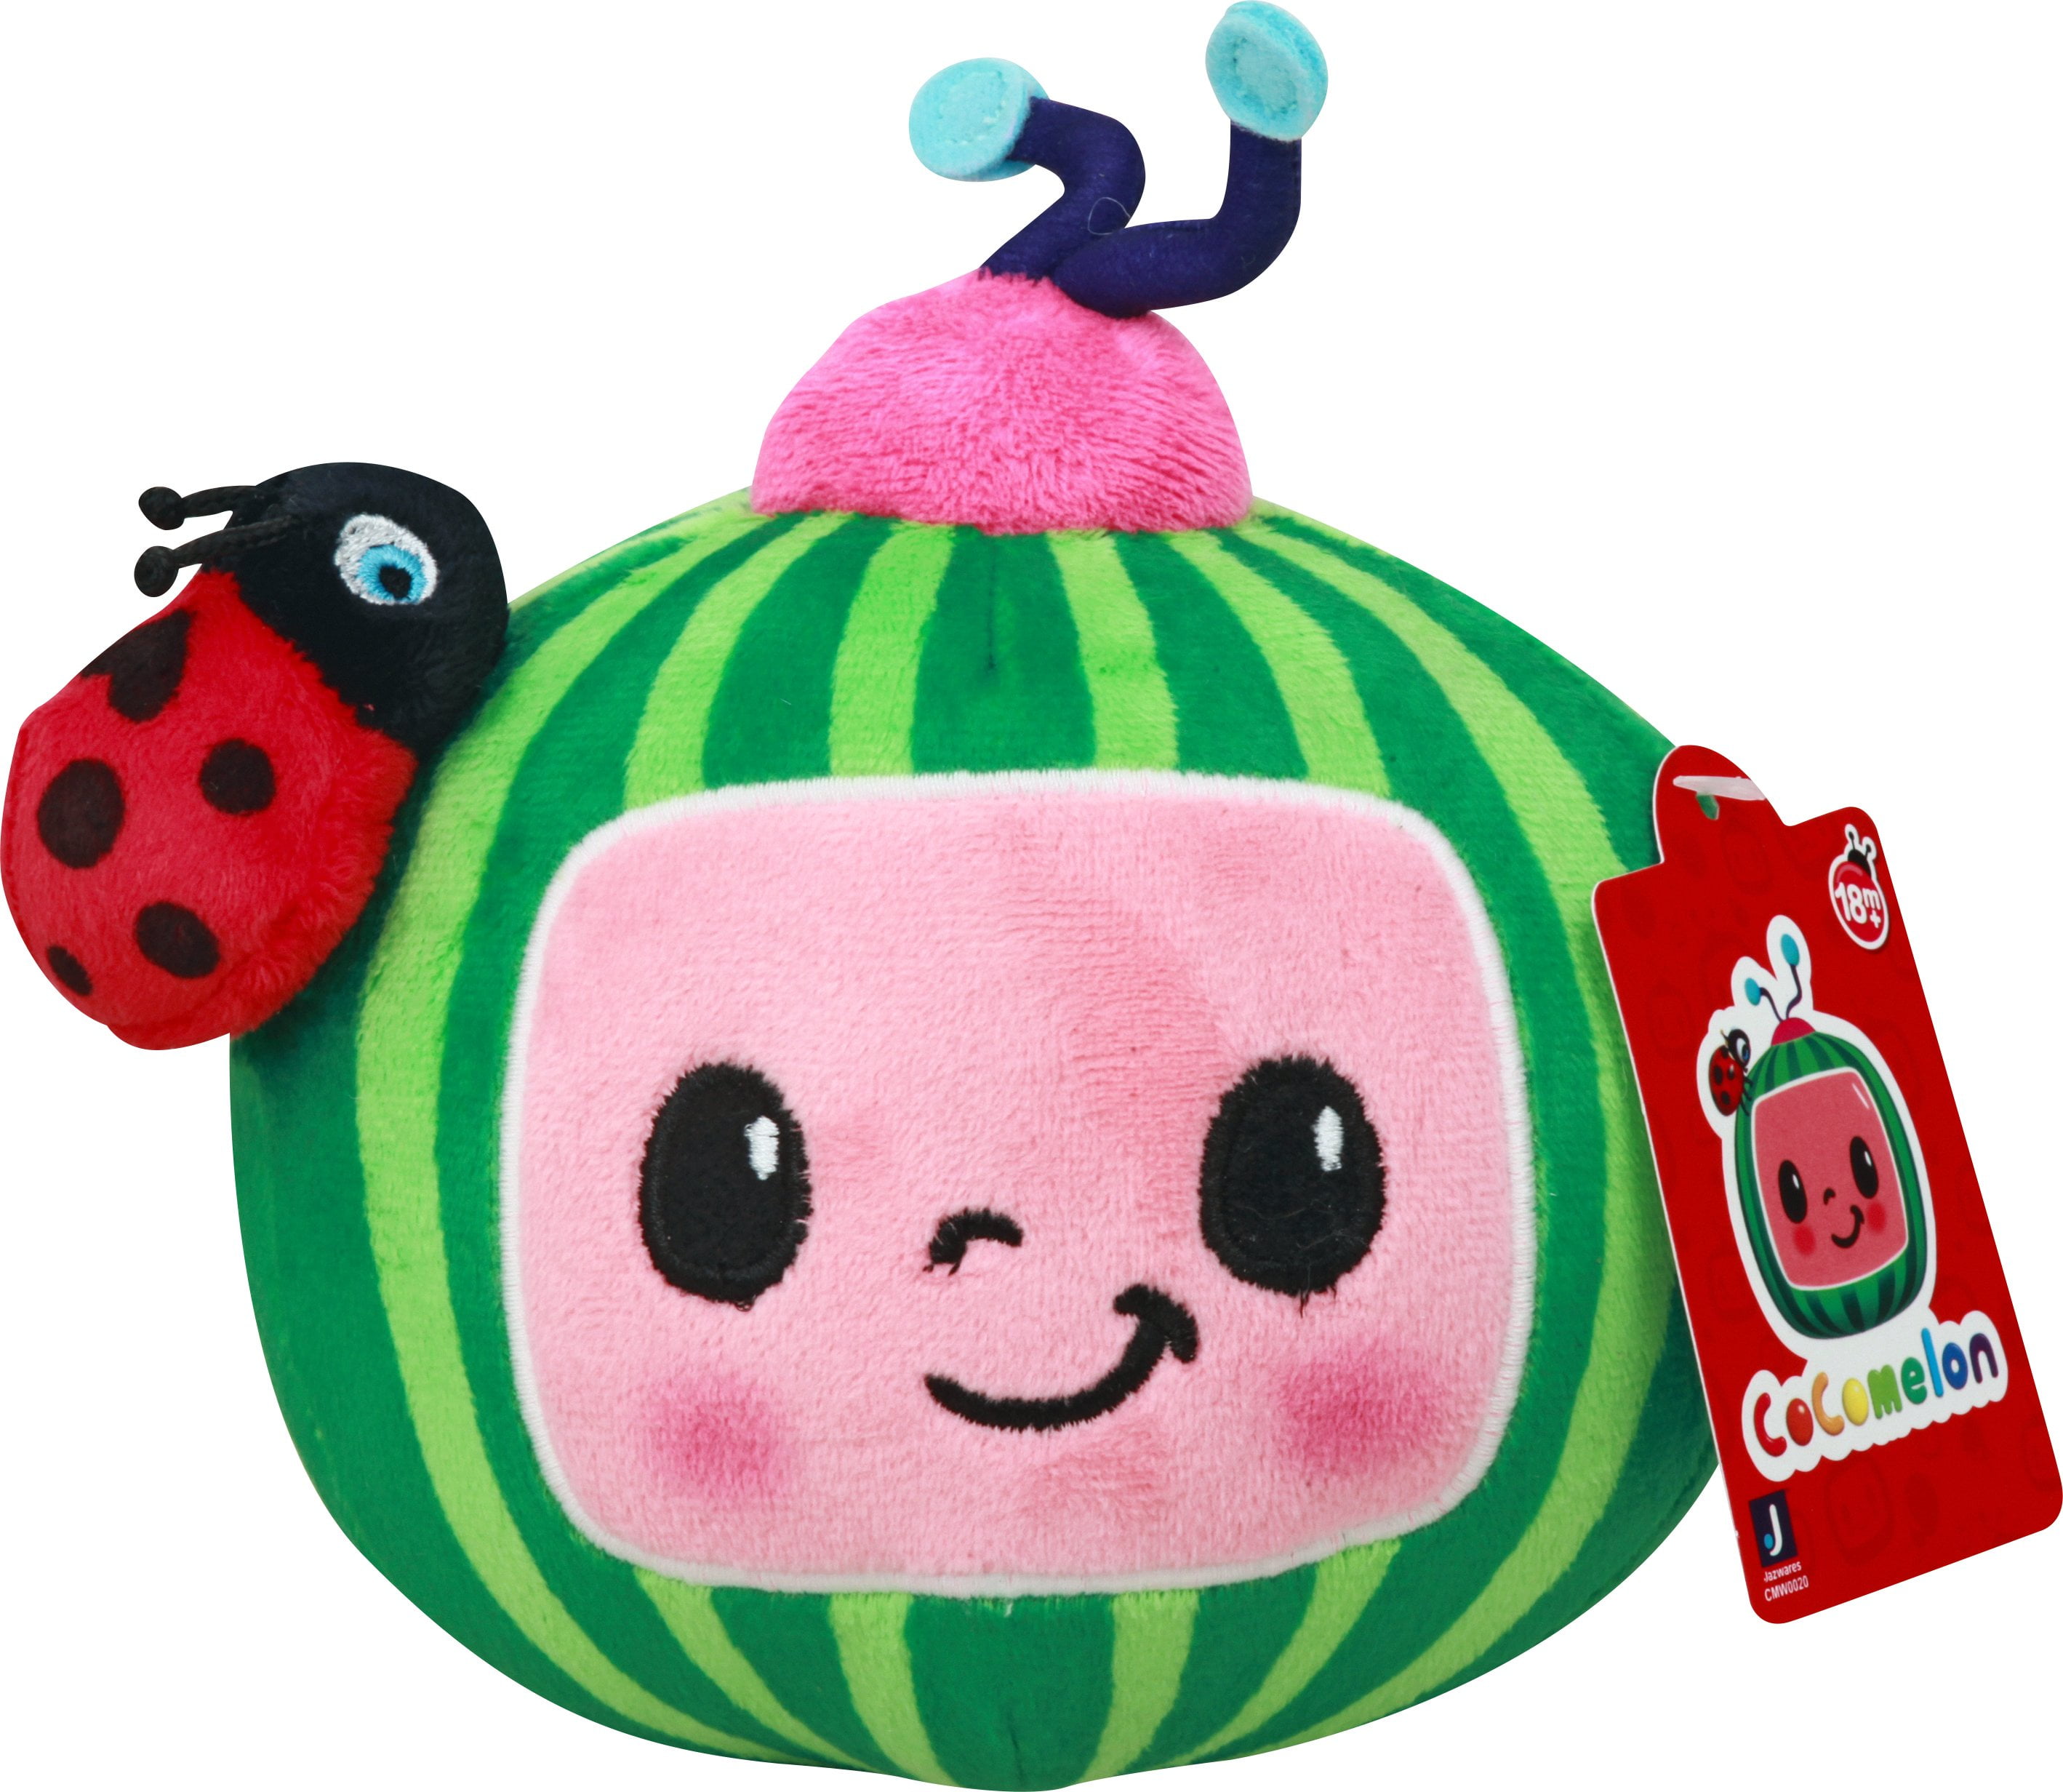 GENUINE Cocomelon Plush Melon Logo Brand New 